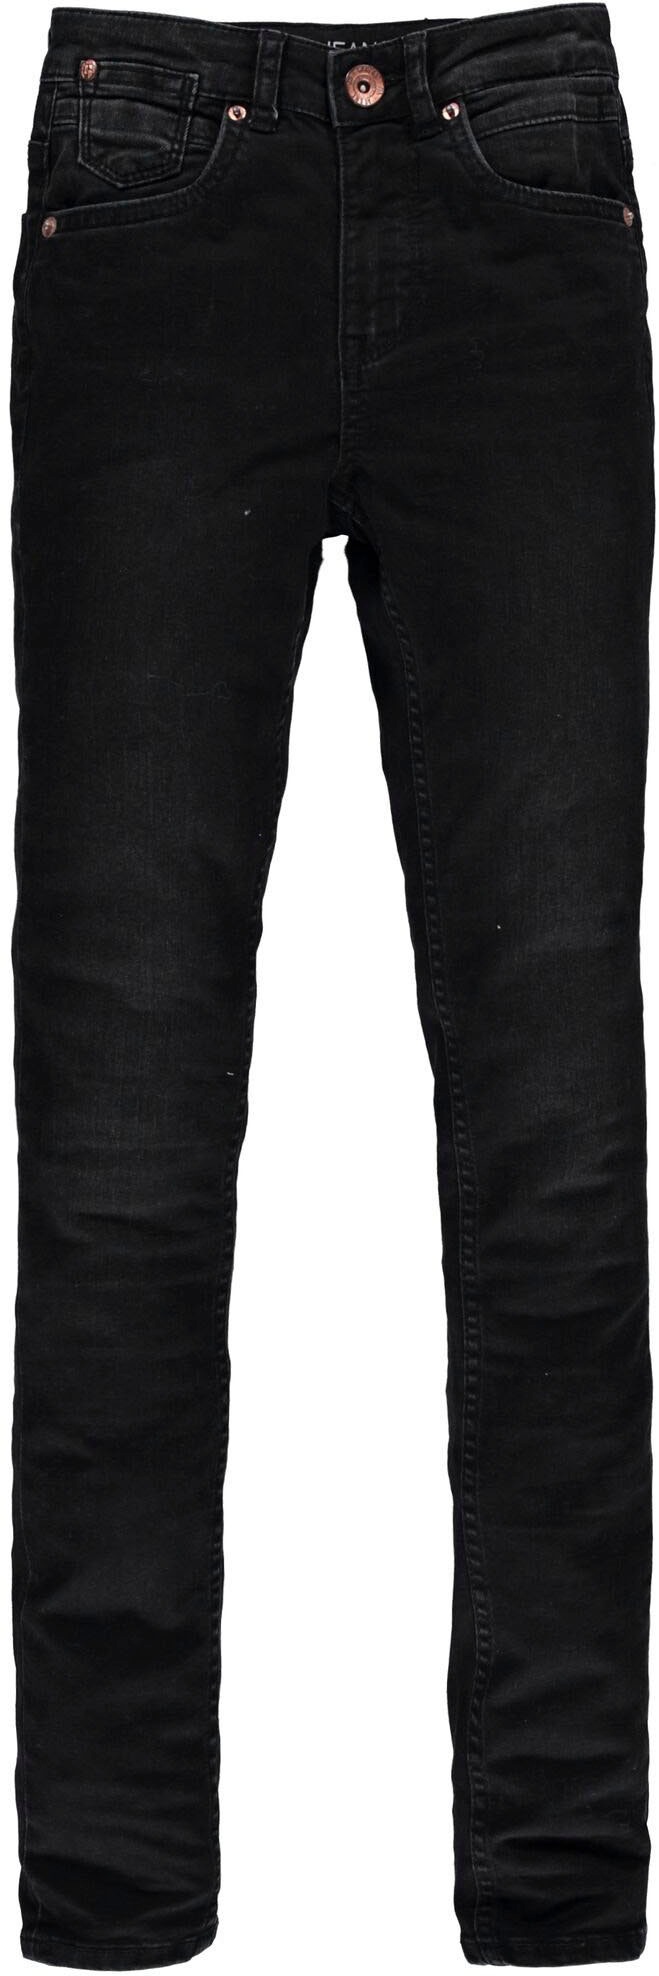 Garcia Stretch-Jeans »570 RIANNA SUPERSLIM« online kaufen